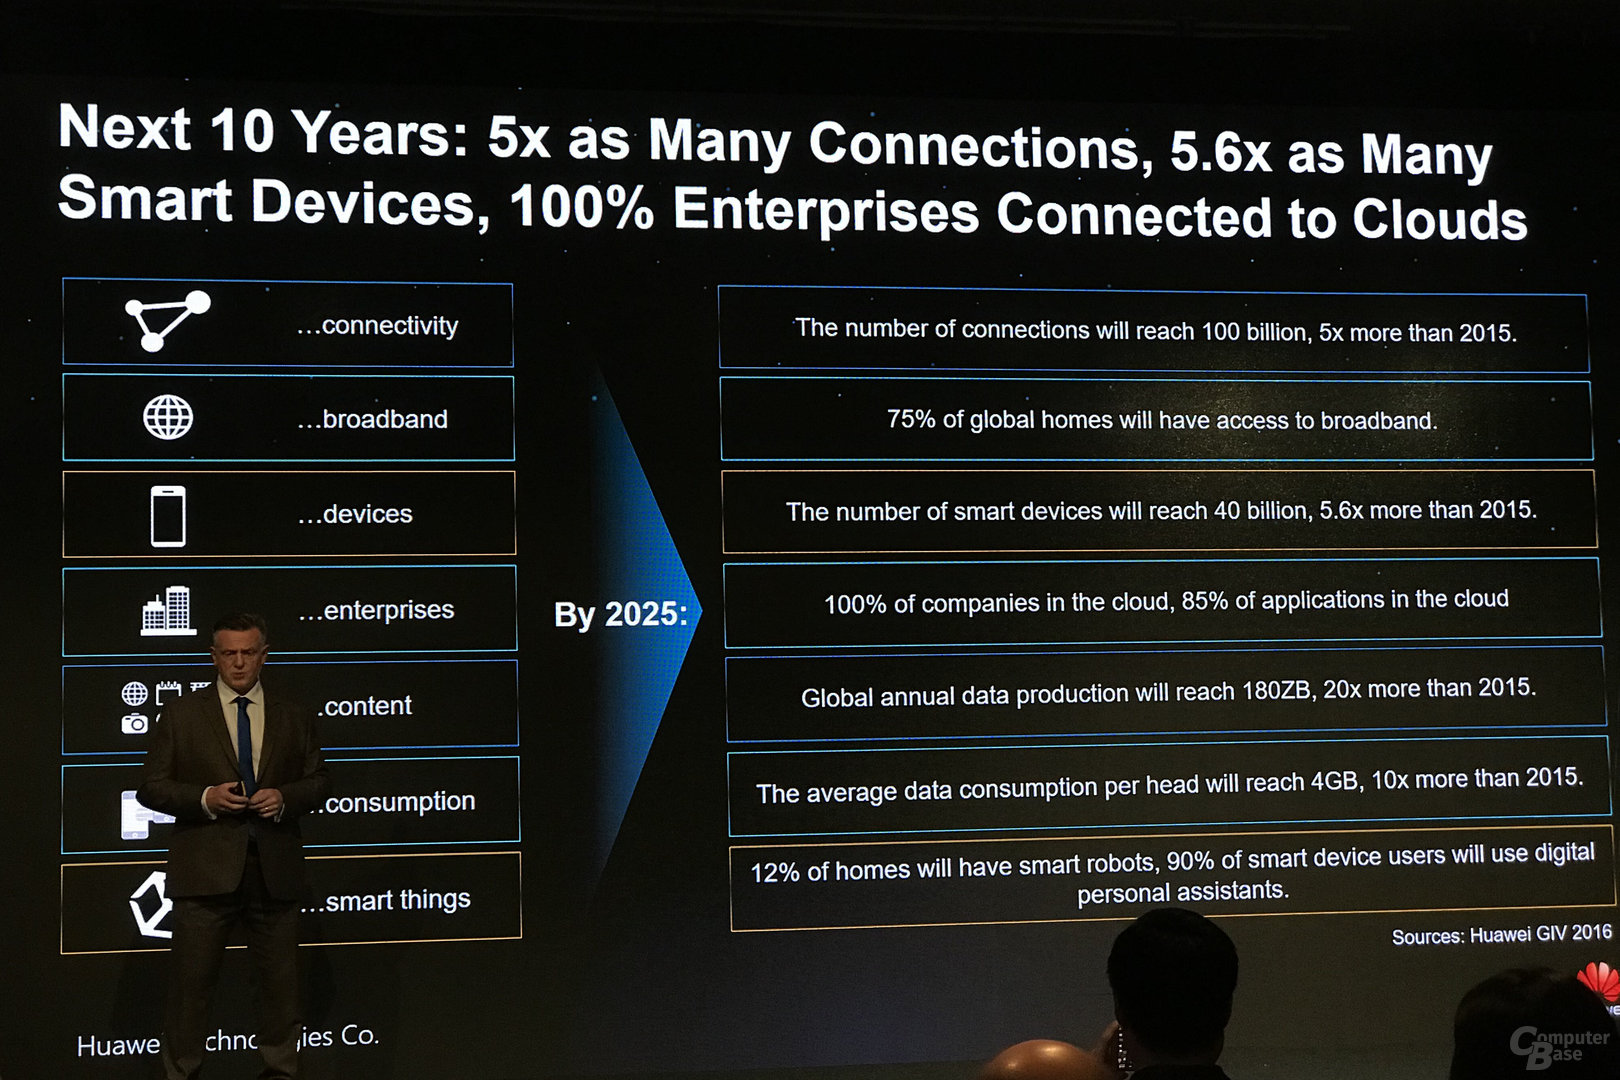 Entwicklung des Datenaufkommens bis 2025 laut Huawei